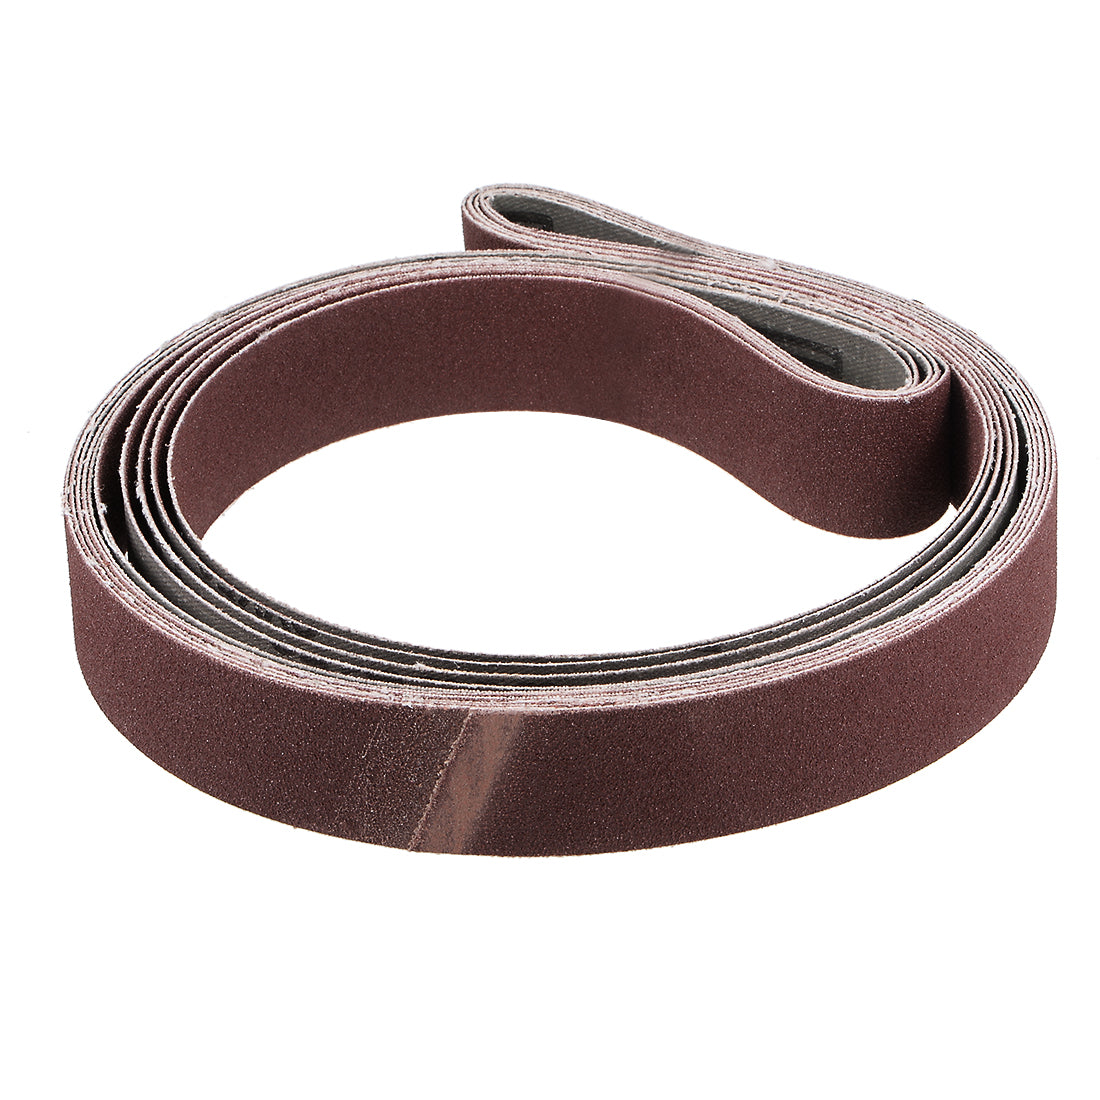 uxcell Uxcell 1 x 42 Inch Sanding Belt 150 Grit Sand Belts for Belt Sander 5pcs